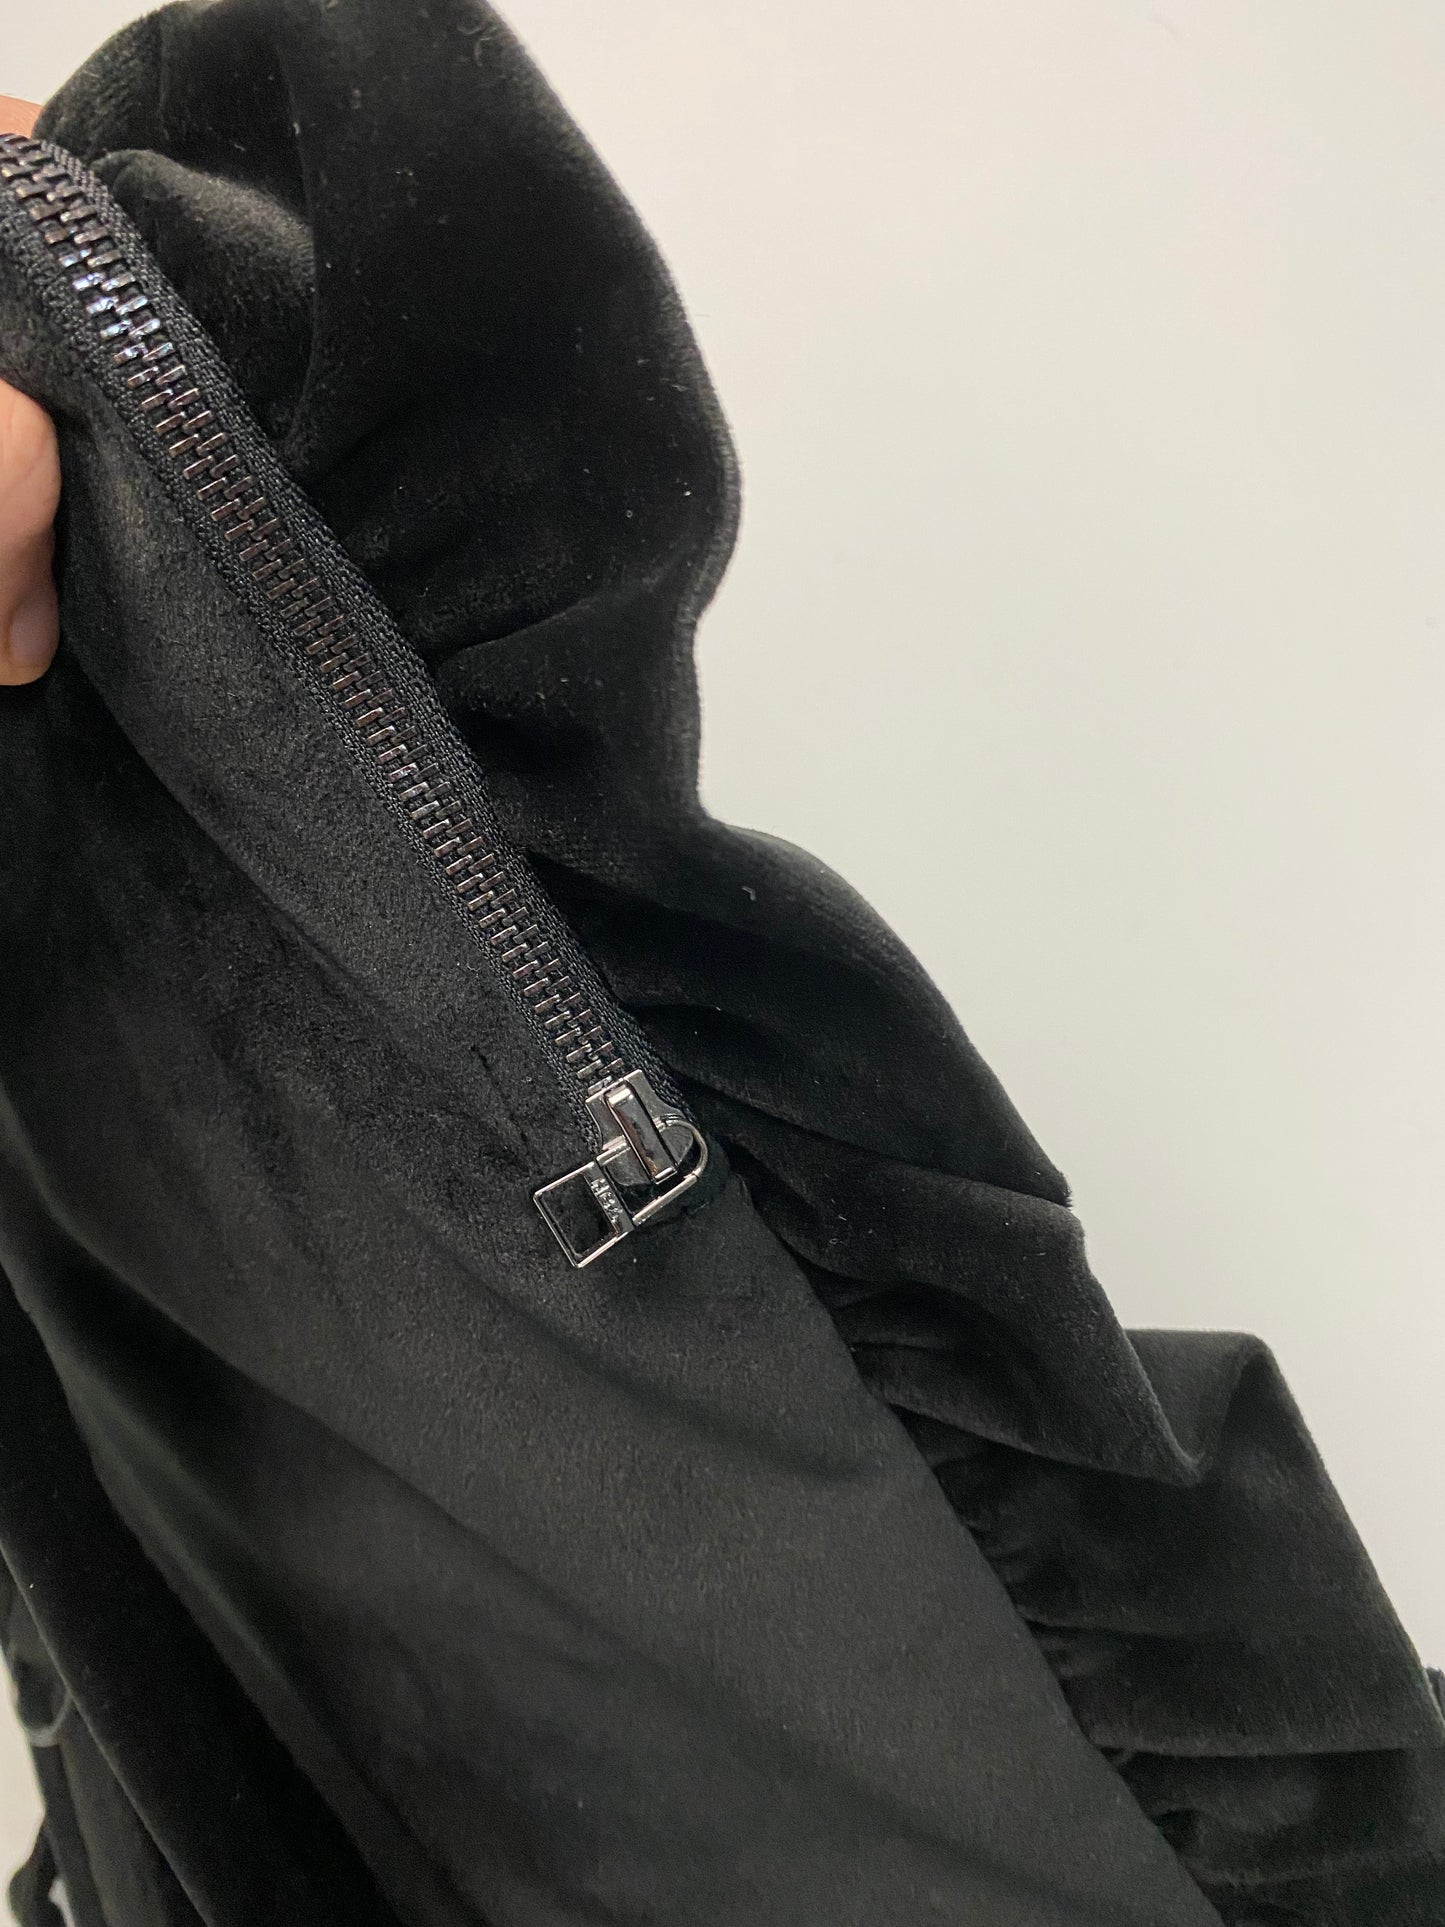 HBA velour / velvet pillow backpack in black SZ:OS